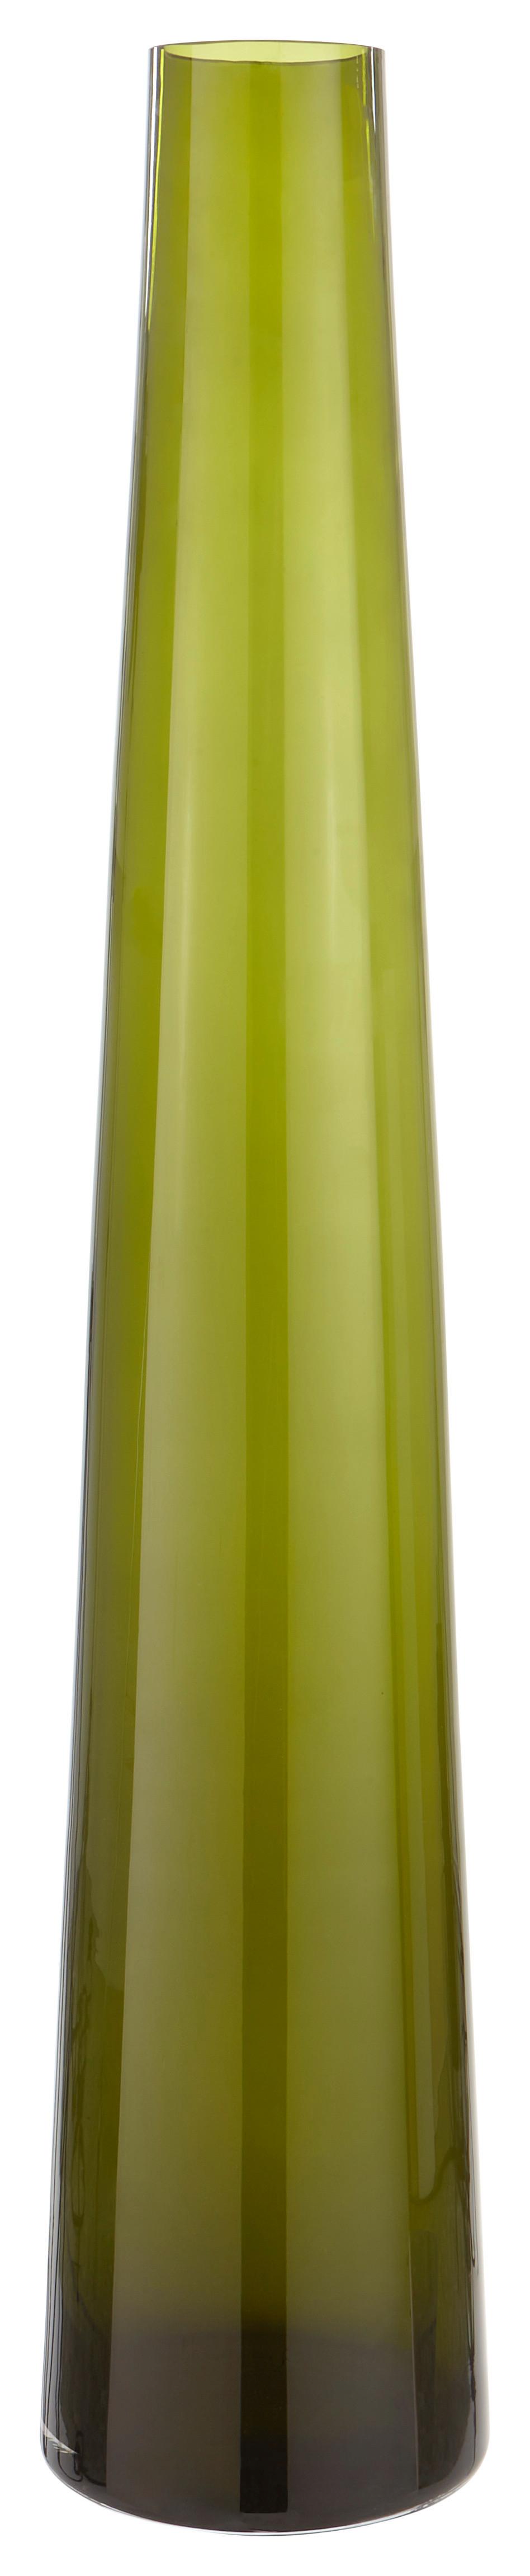 Váza Olivia, Ø/v: 14/70cm - olivově zelená, Romantický / Rustikální, sklo (14/70cm) - Premium Living